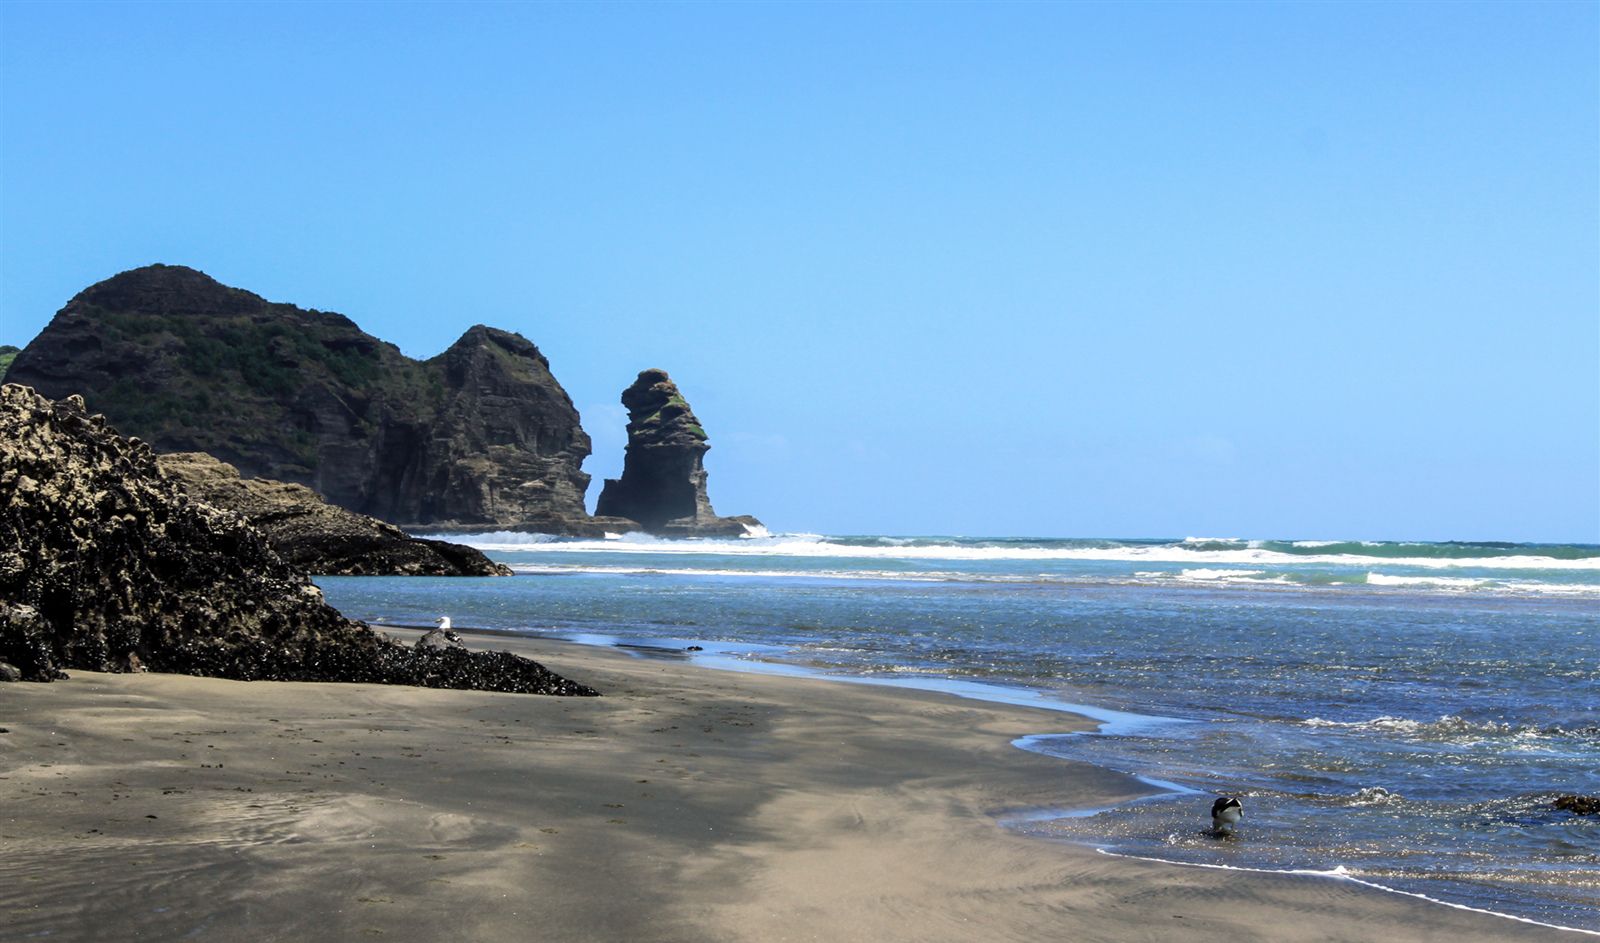 皮哈海滩观日落 万古长思天上来 | 新西兰旅游人文 | 新西兰先驱报中文网